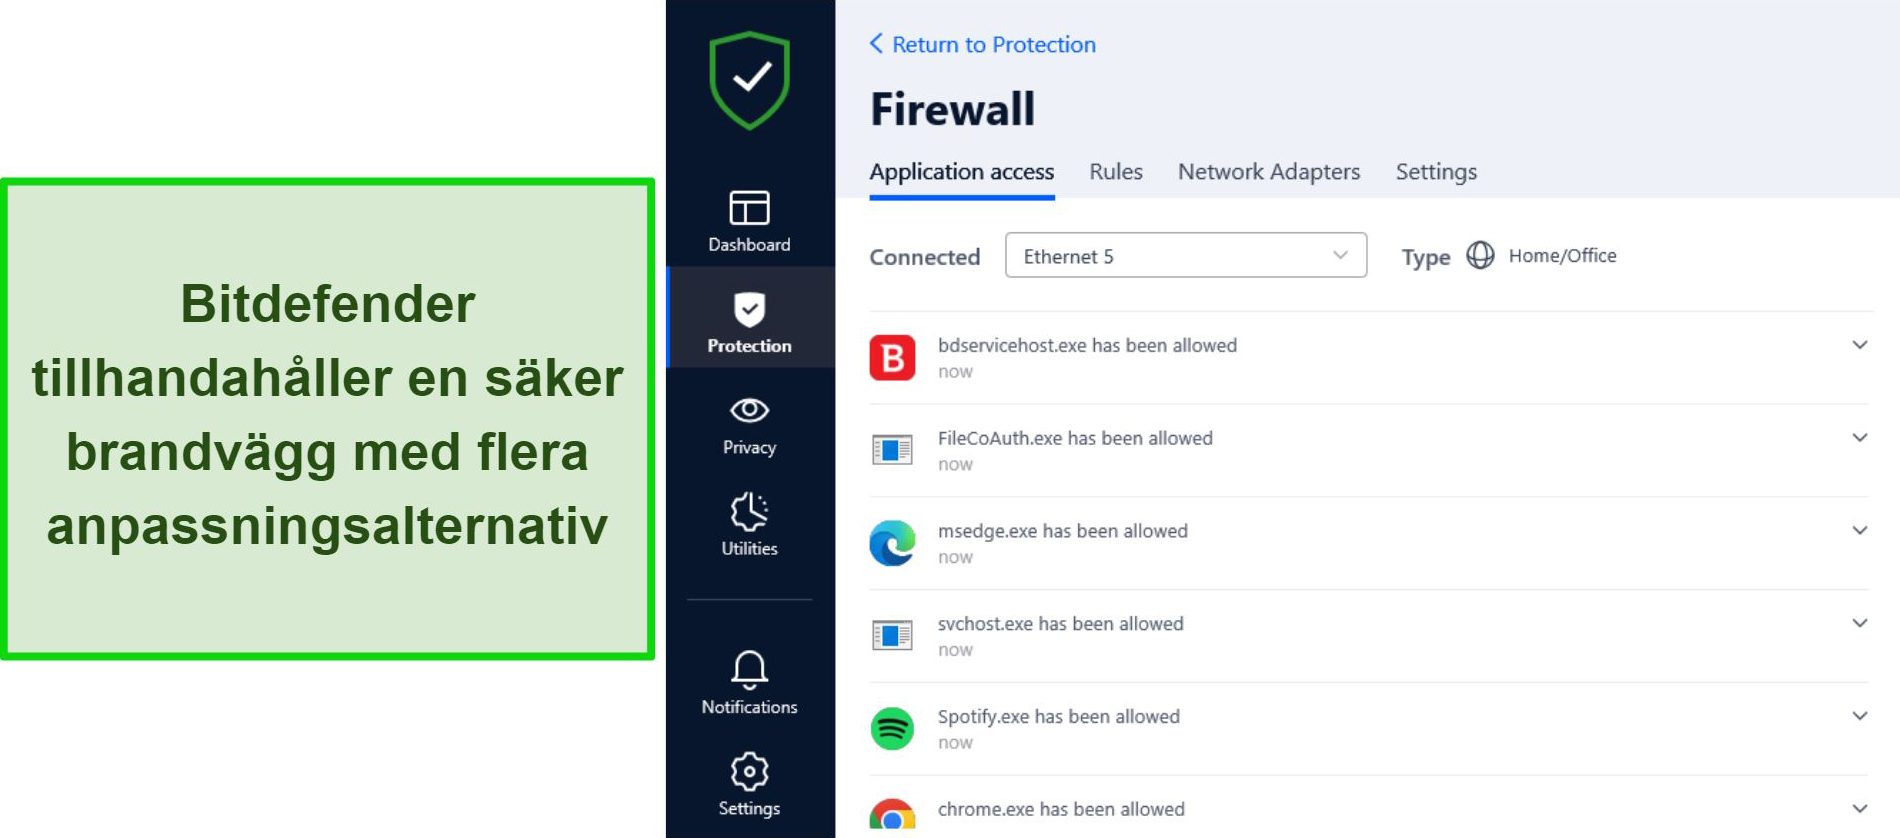 Screenshot of Bitdefender's firewall interface